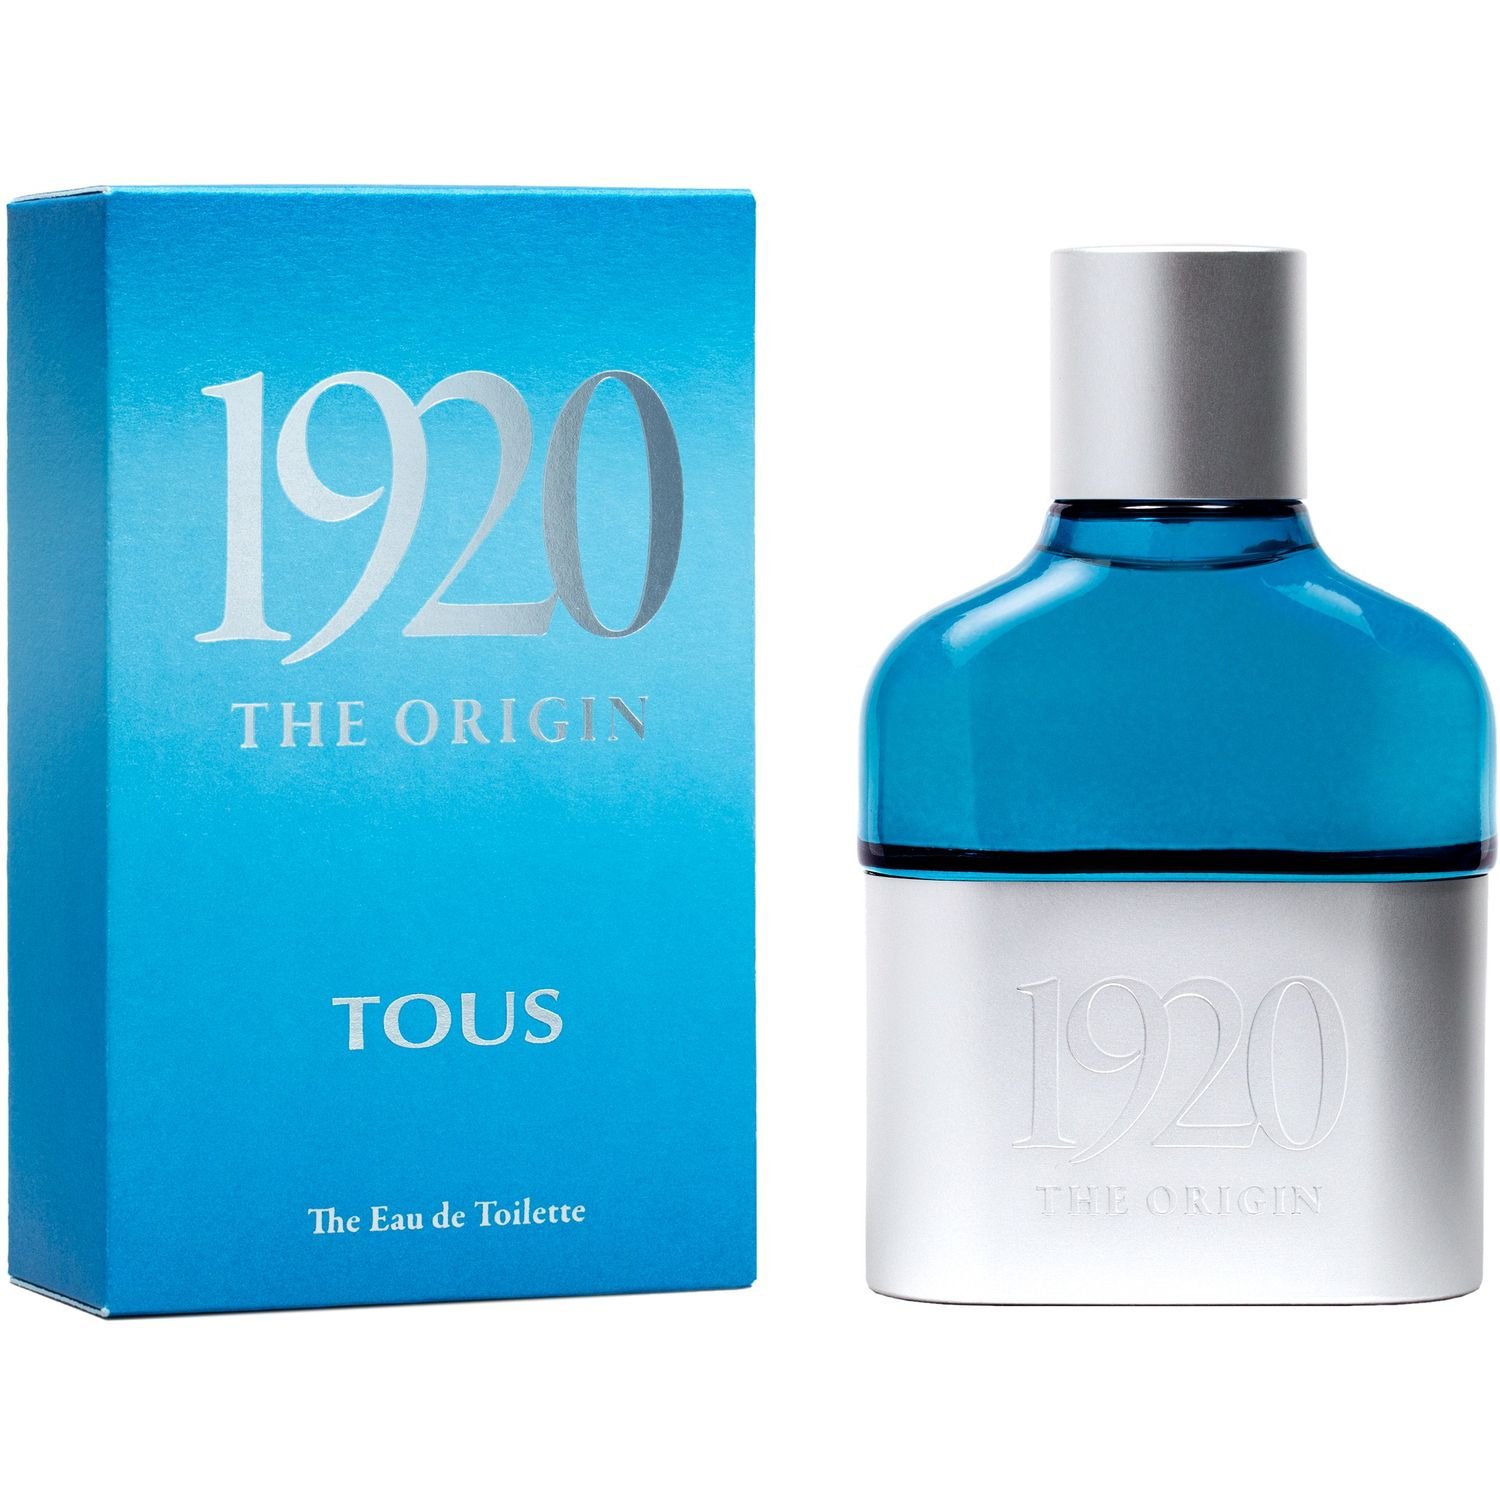 Фото - Мужской парфюм Tous Туалетна вода для чоловіків Tous1920 The Origin, 100 мл 